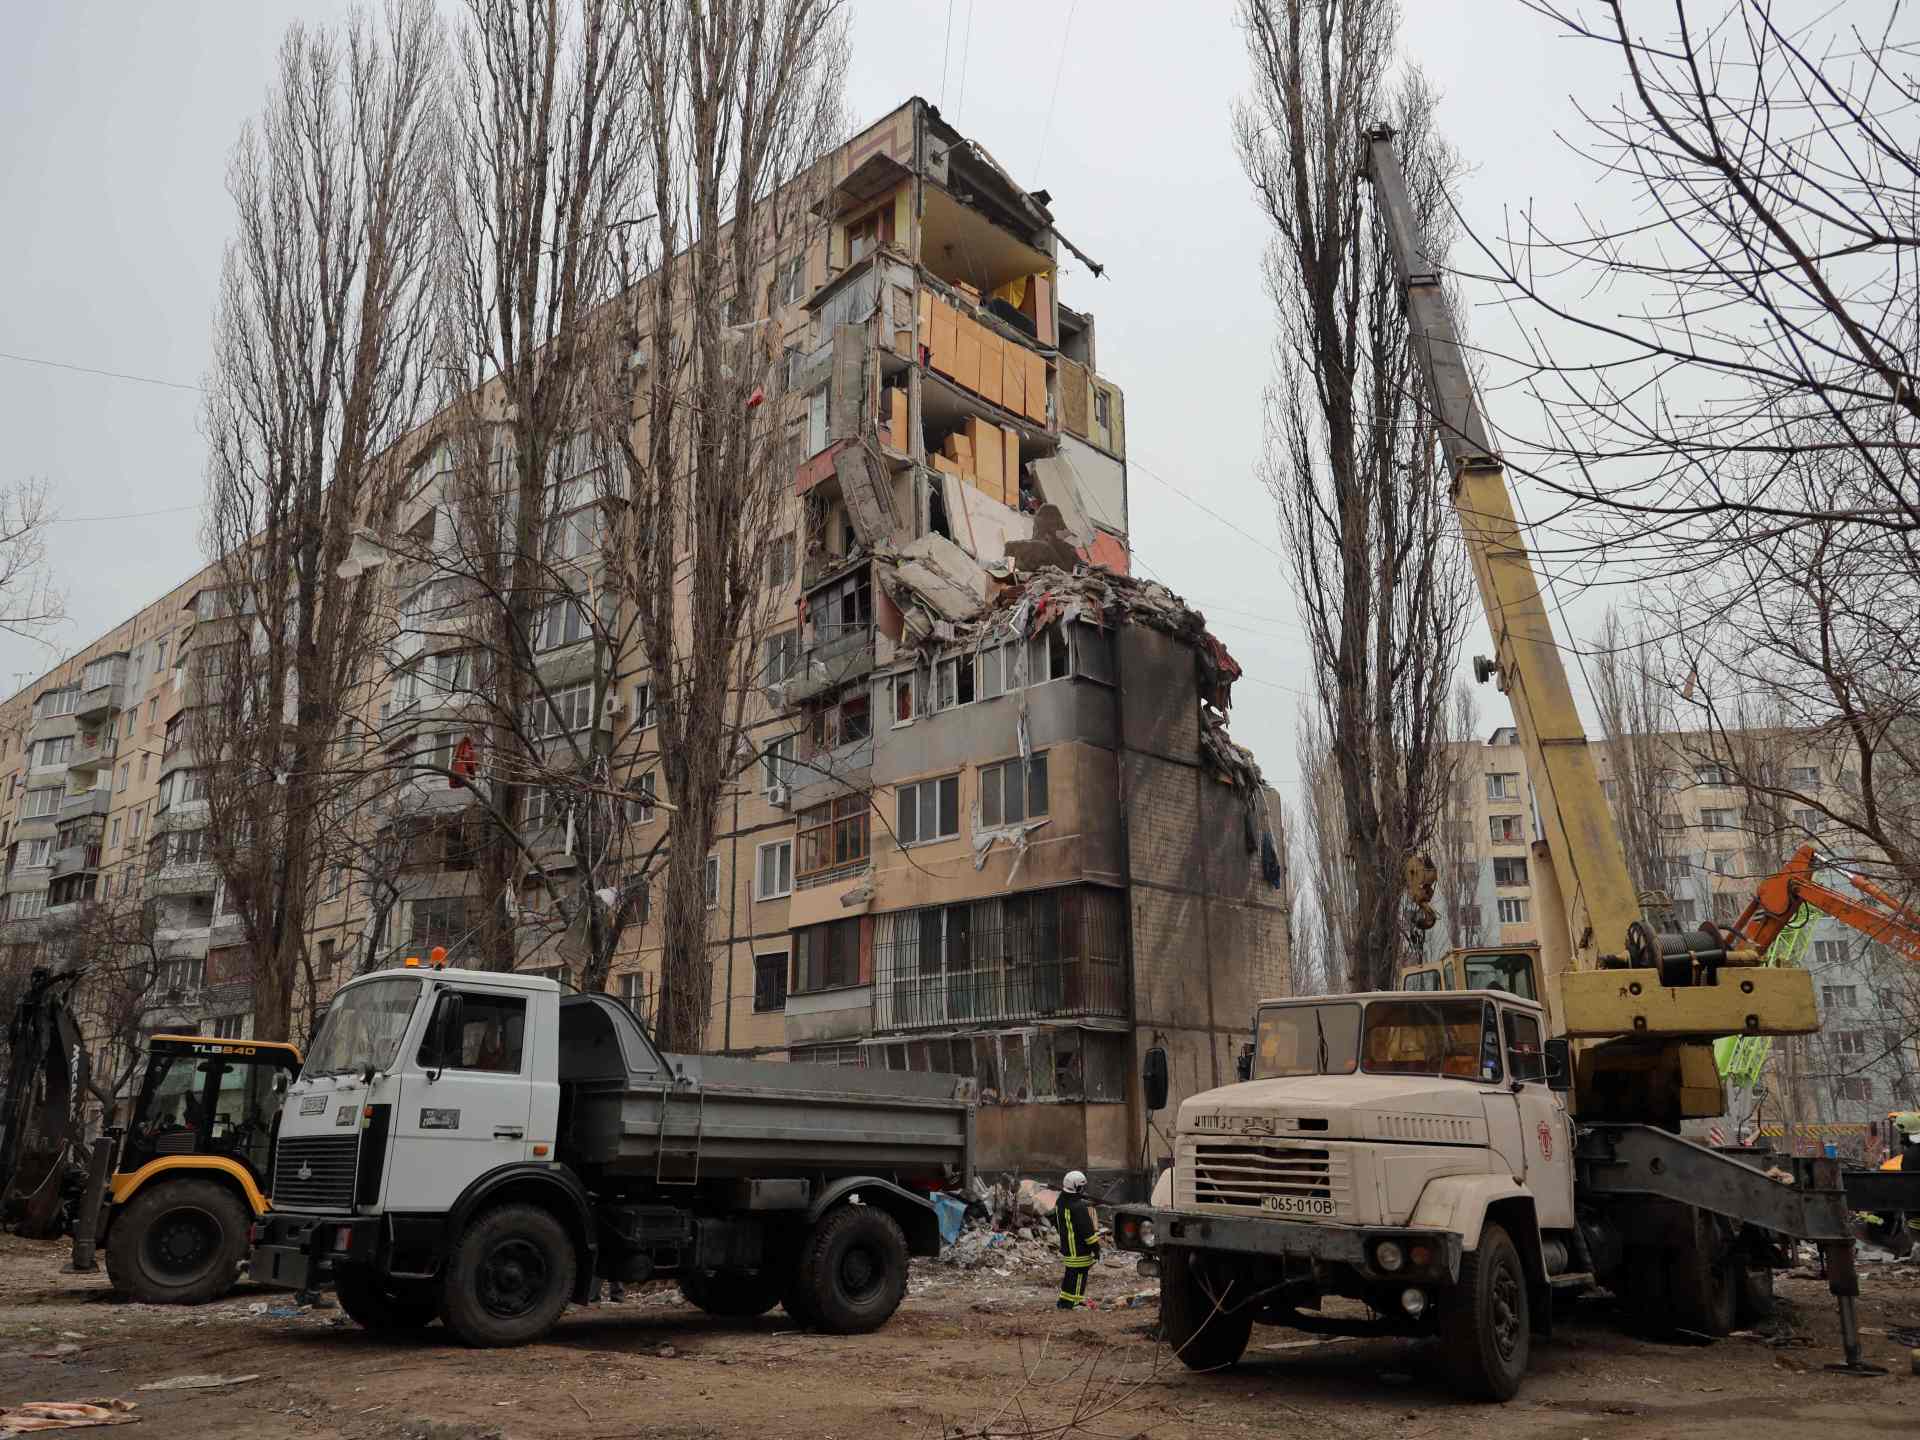 مسيّرات أوكرانية تشعل النيران بمناطق روسية وإجلاء للسكان | أخبار – البوكس نيوز